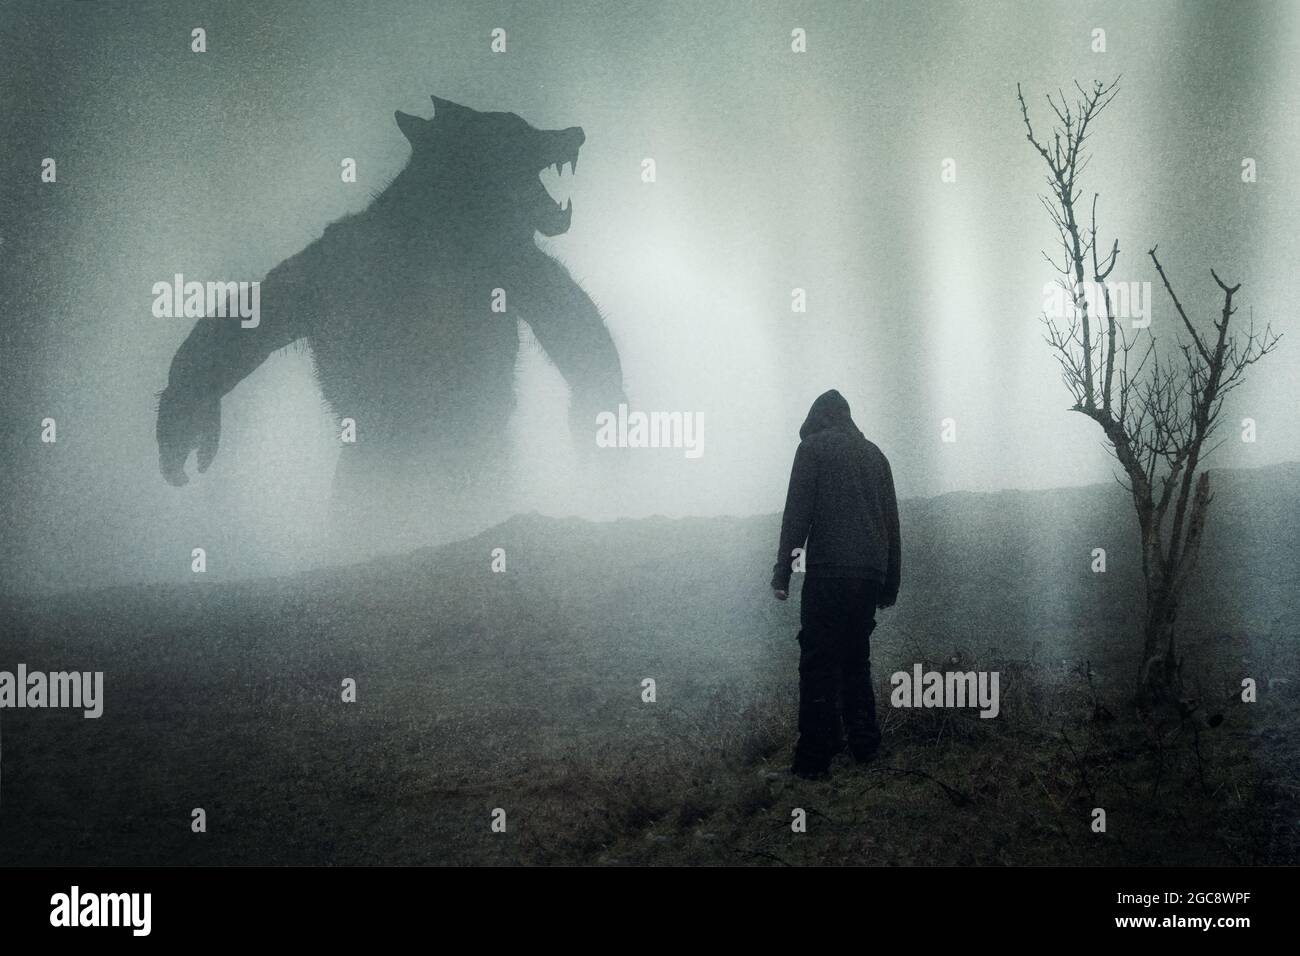 Ein Horrorkonzept eines Mannes, der auf einer launischen Bergseite eine riesige Werwolf-Figur ansieht. Mit einer Grunge-Bearbeitung Stockfoto